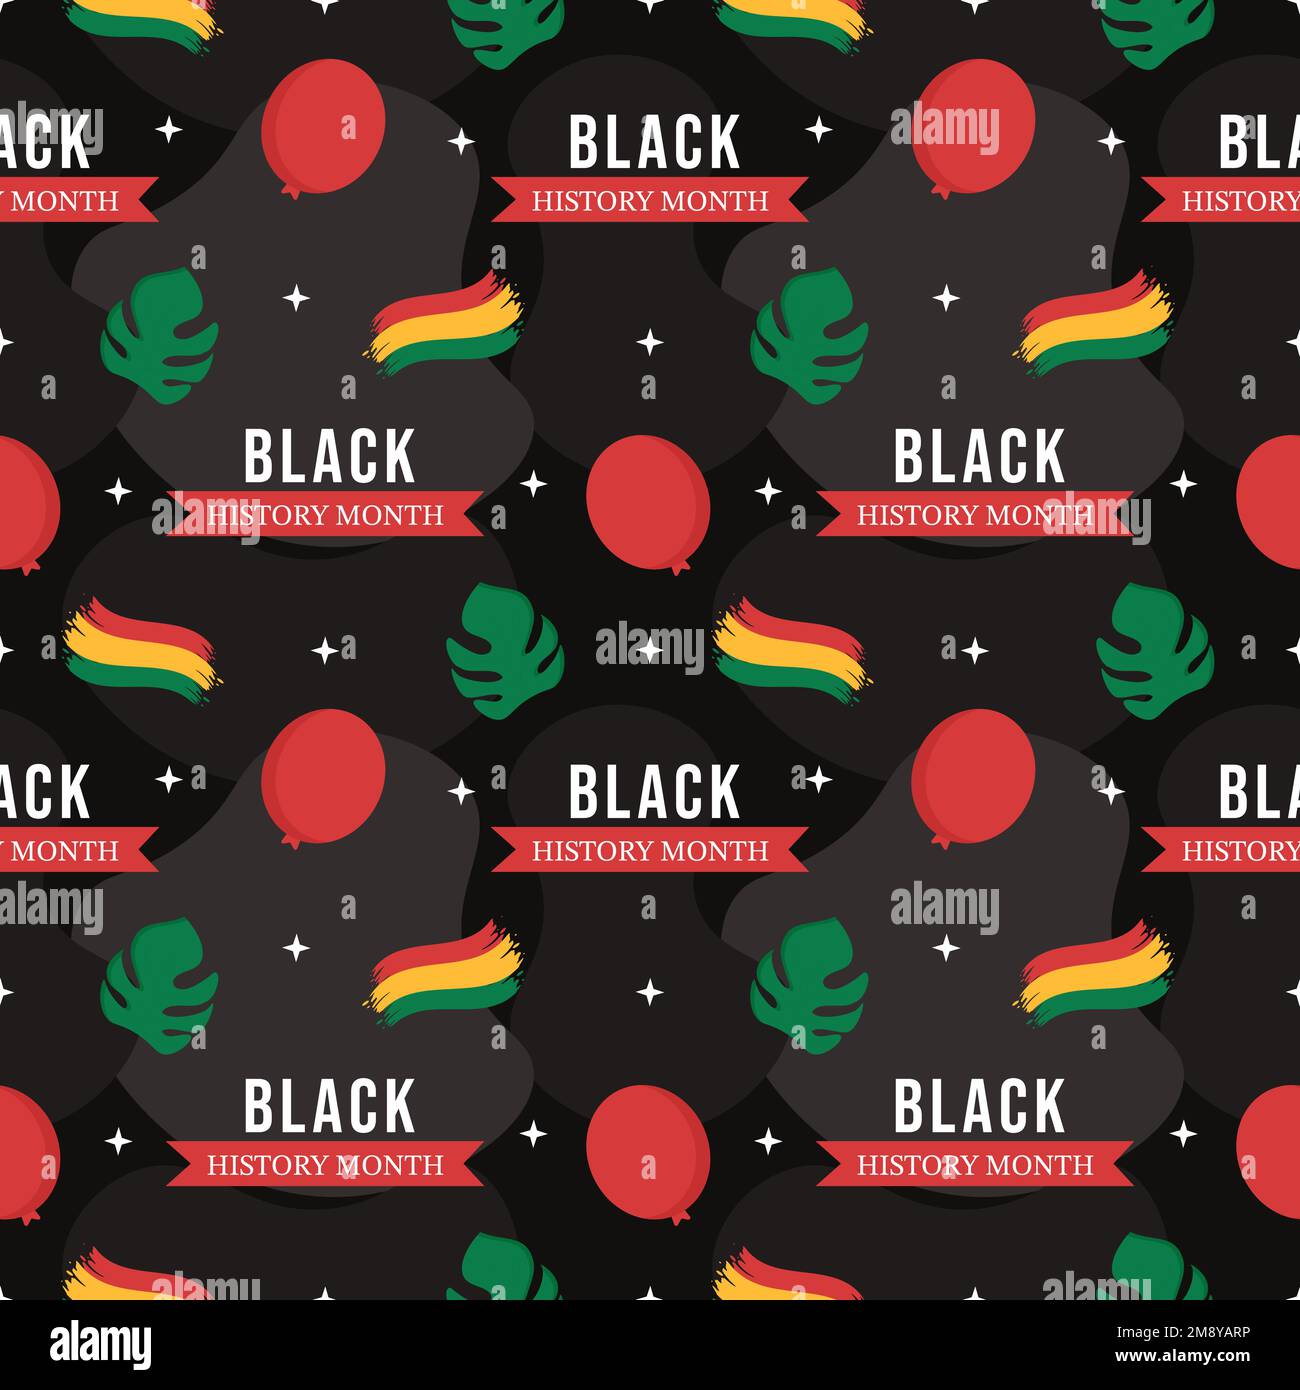 Black History Month Nahtloses Muster eines afroamerikanischen Feiertags in einer handgezeichneten Cartoon-Flachdesign-Illustration Stock Vektor